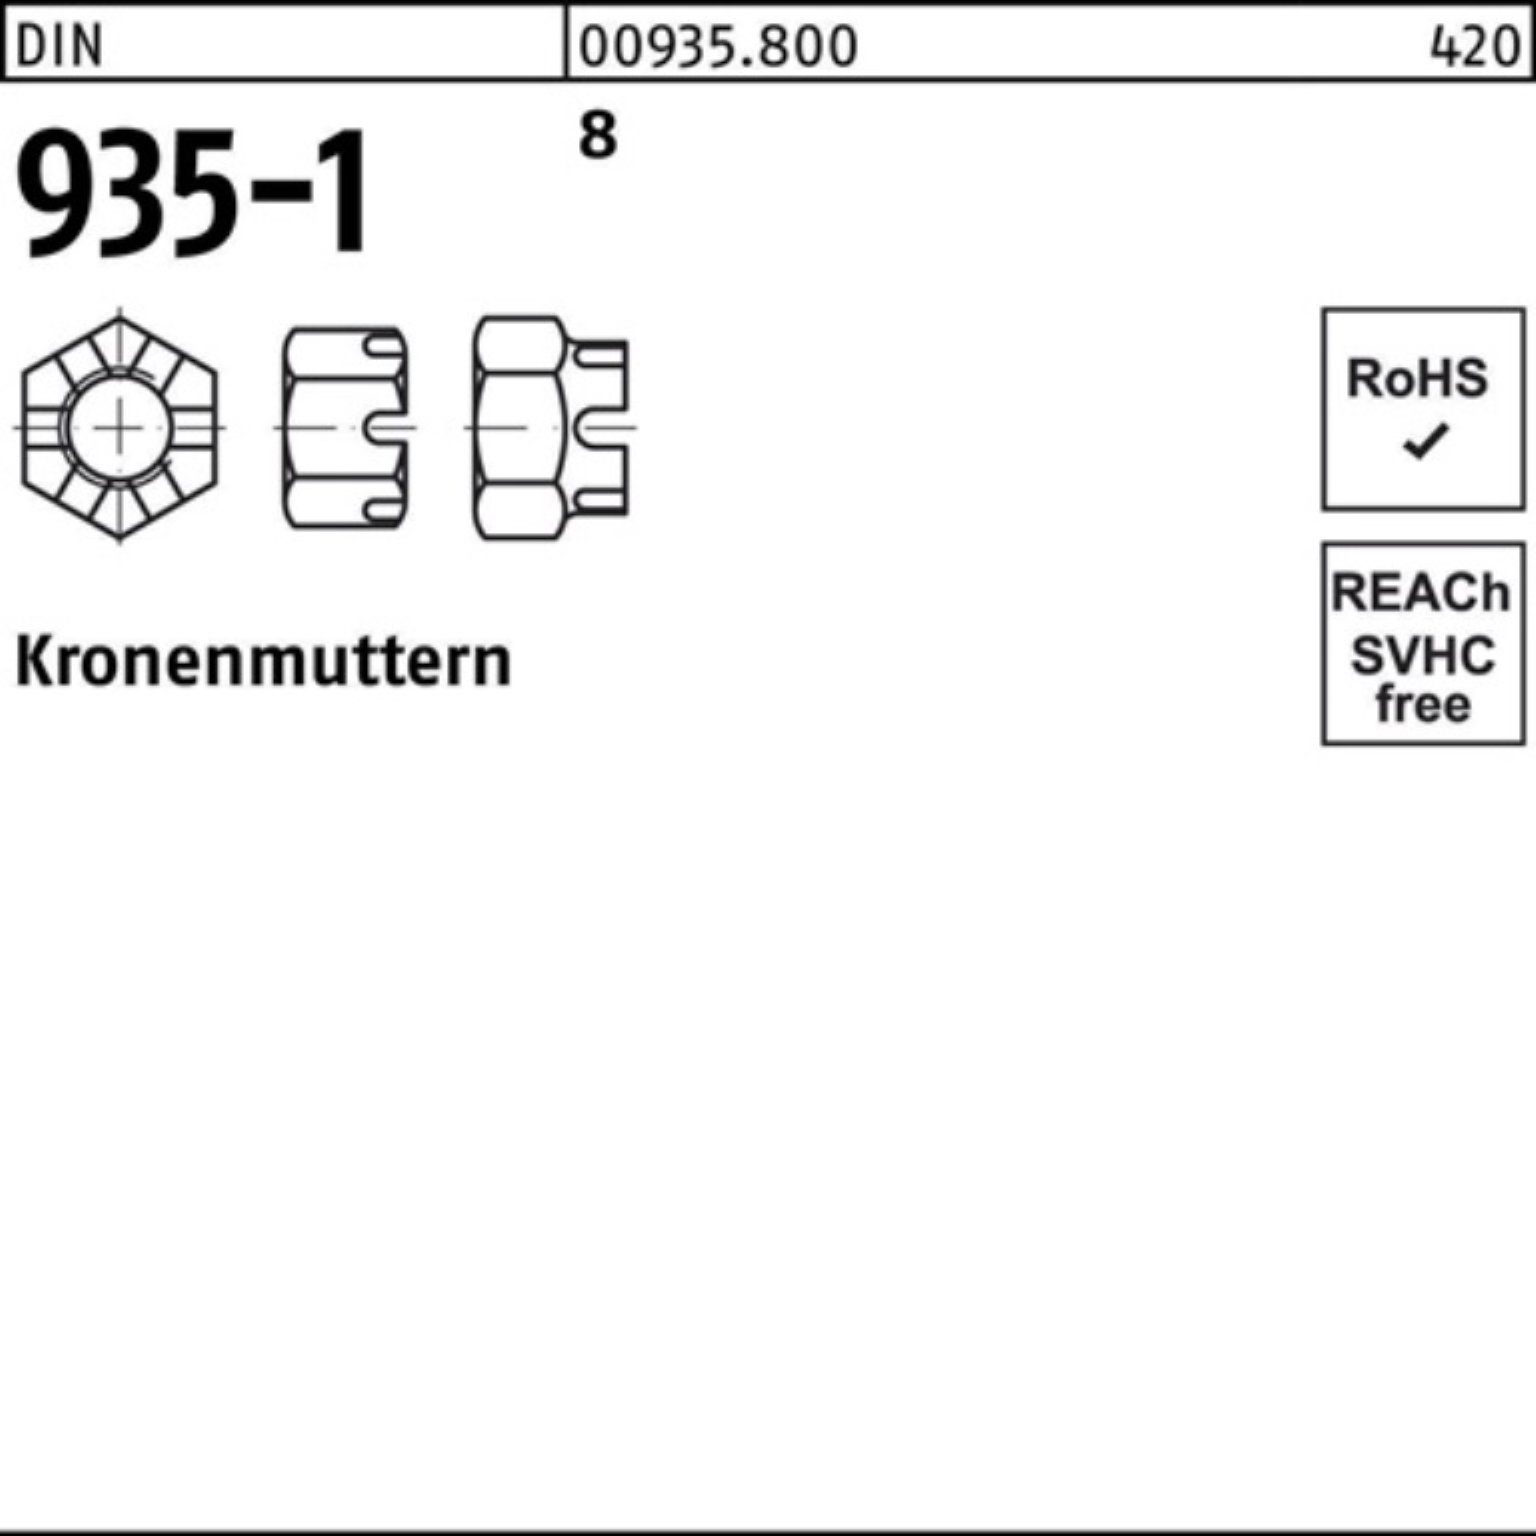 Reyher Kronenmutter 100er Pack Kronenmutter DIN 935-1 M30 8 10 Stück DIN 935-1 8 Kronenmu | Muttern